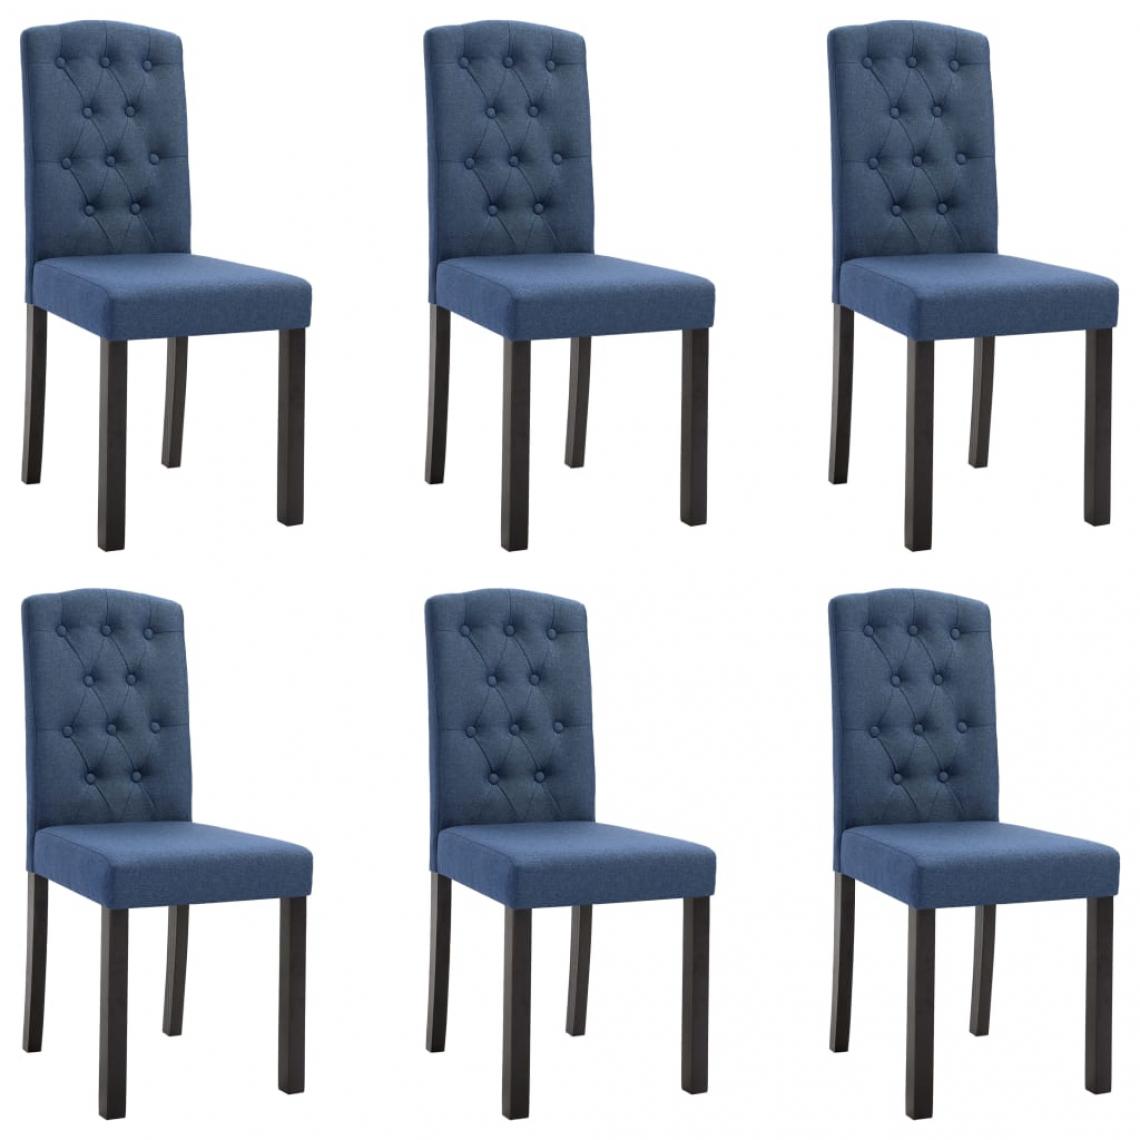 Decoshop26 - Lot de 6 chaises de salle à manger cuisine design moderne tissu bleu CDS022209 - Chaises